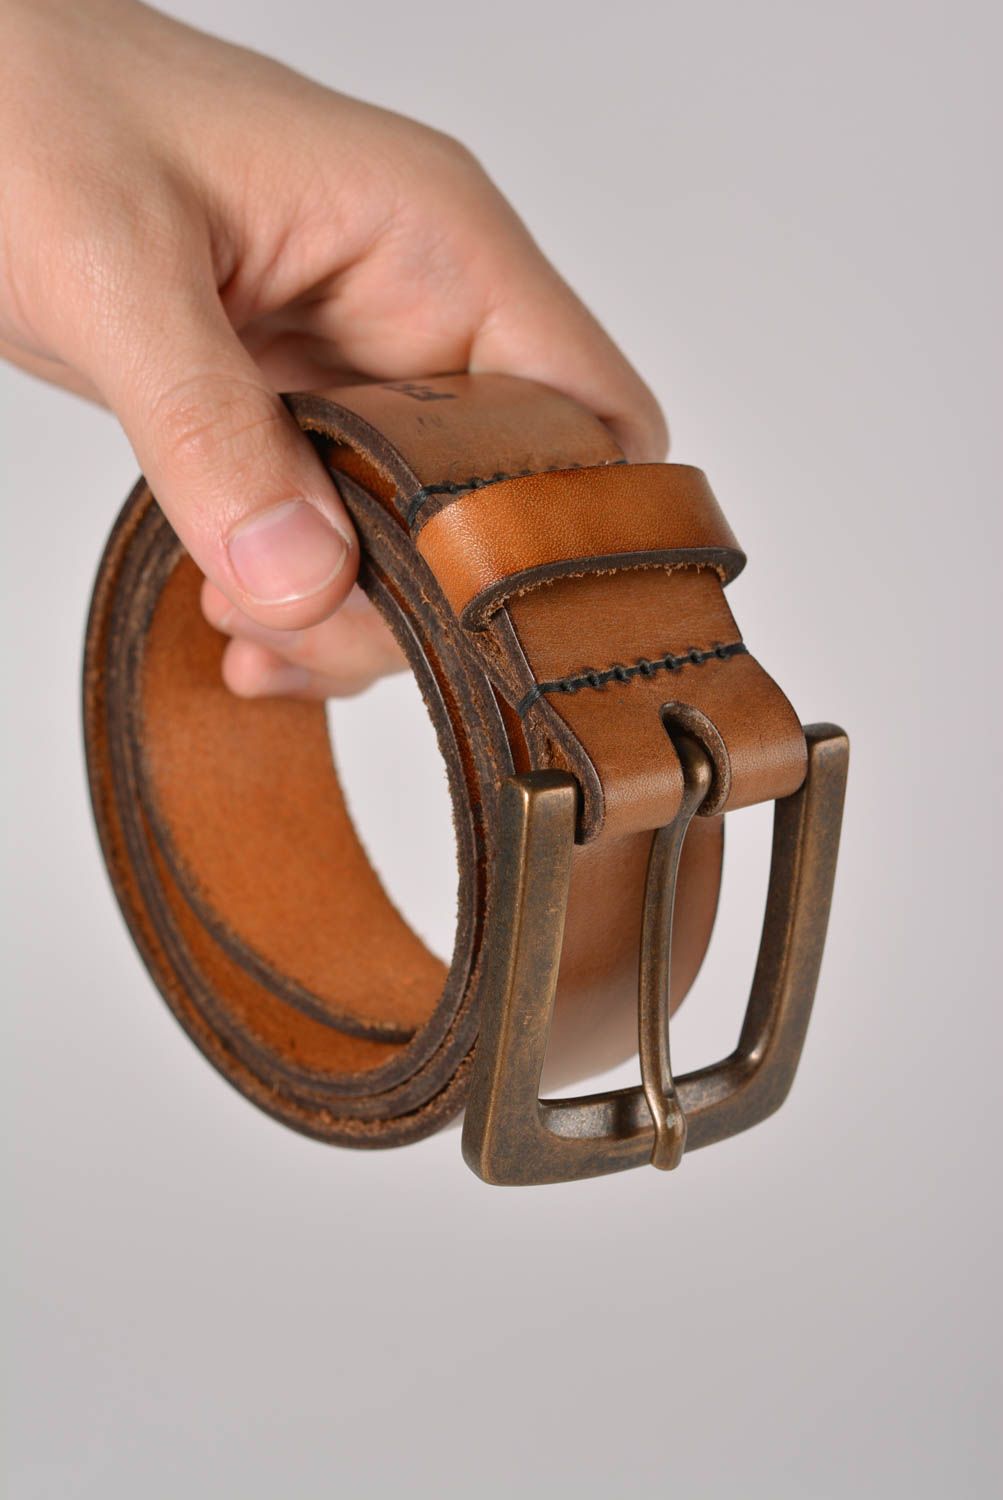 Кожаный аксессуар для мужчин хенд мейд ремень мужской кожаный ремень коричневый фото 3